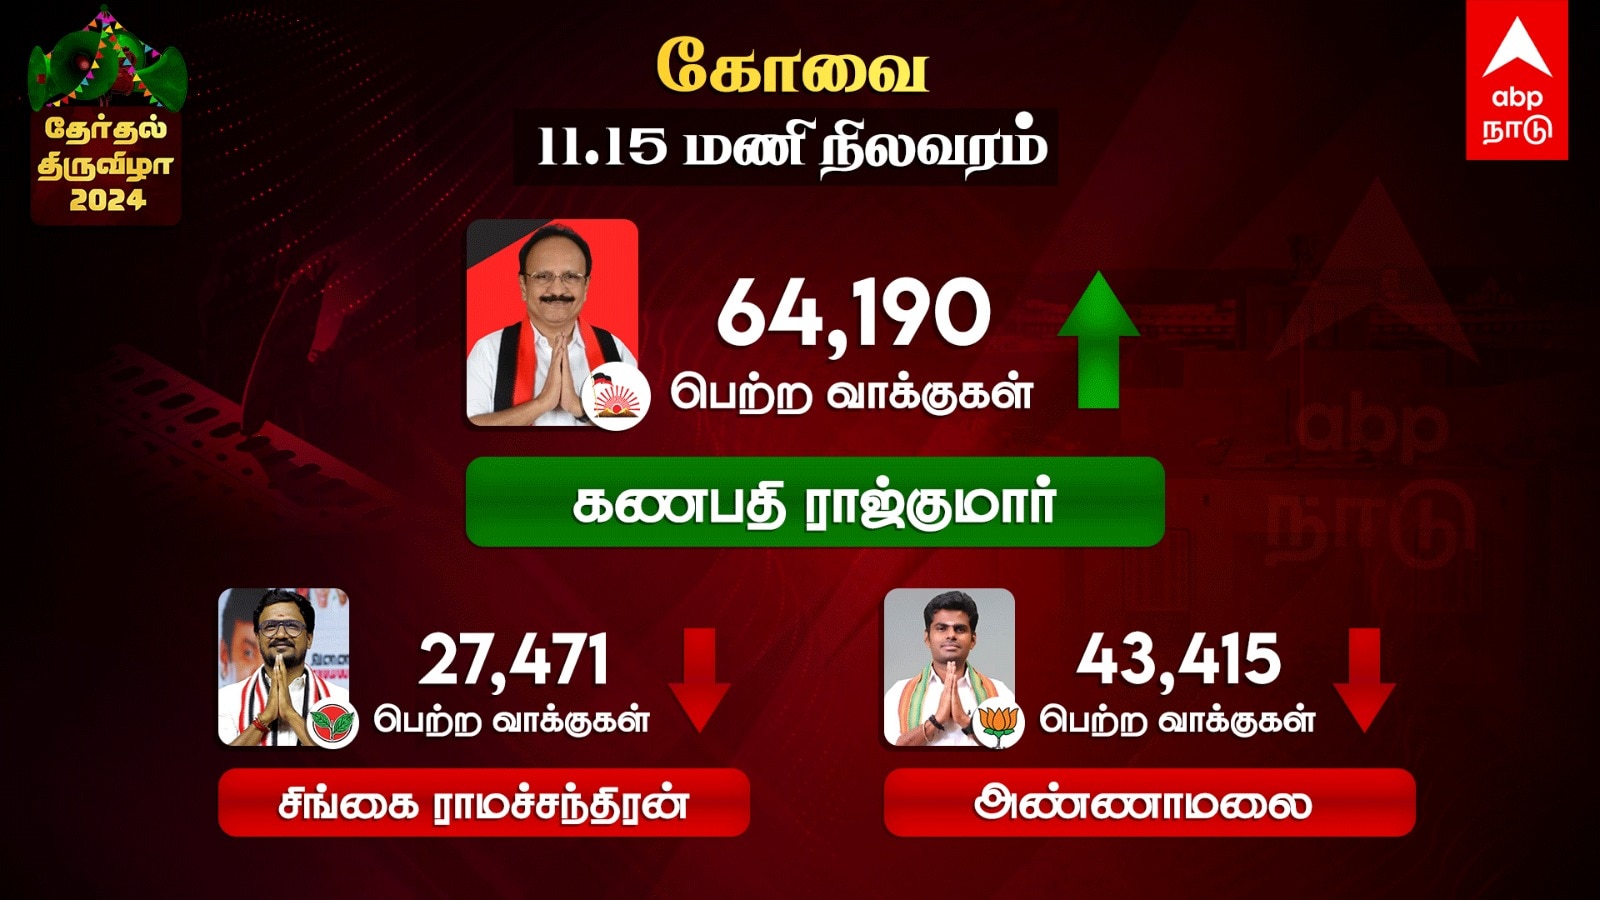 Coimbatore Election Results 2024: கோவையில் வெற்றியை உறுதி செய்த திமுக - அண்ணாமலை தோல்வி!